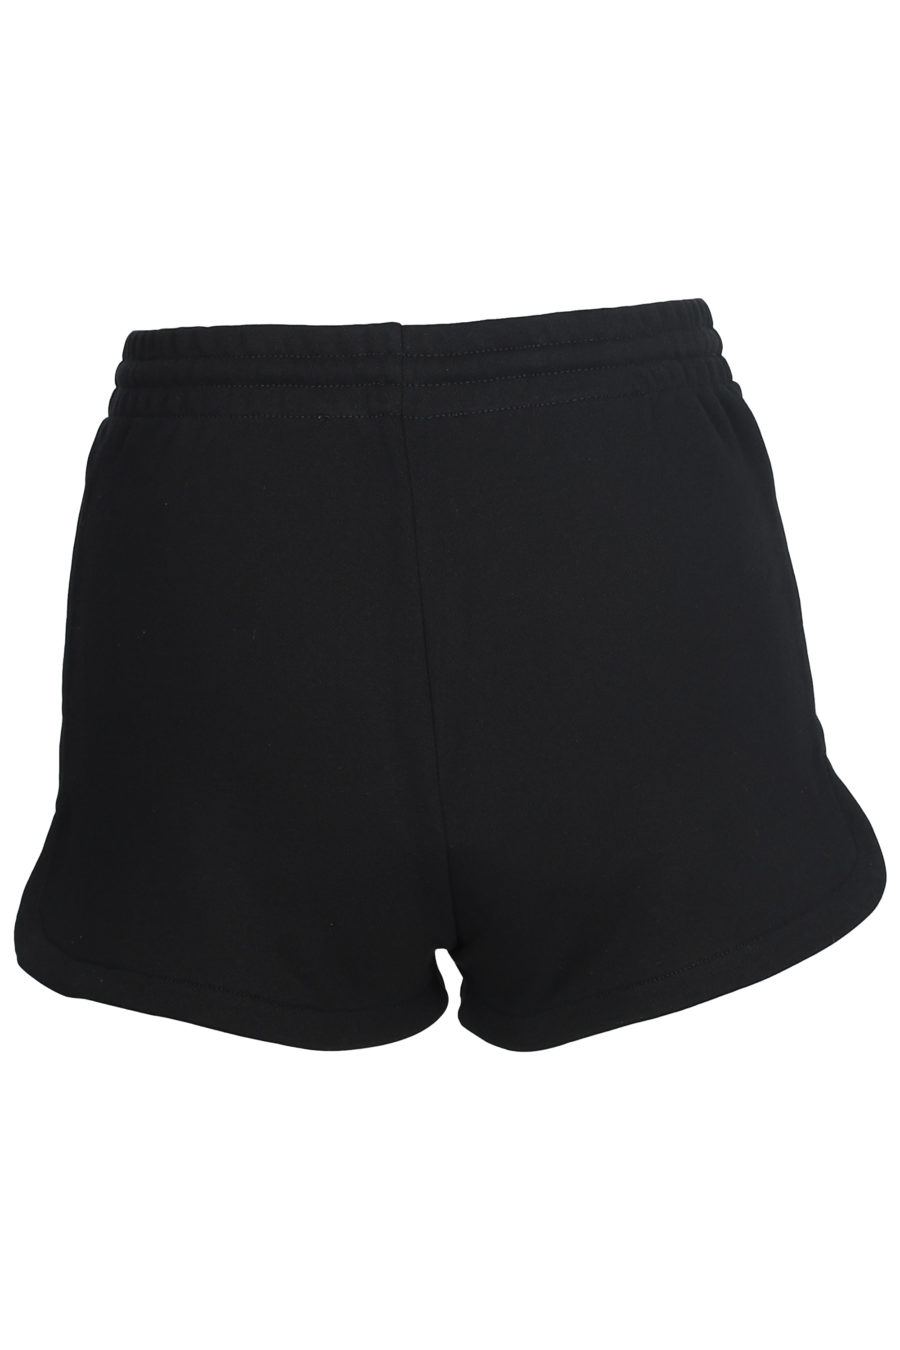 Pantalón corto negro con logo de colores - IMG 5604